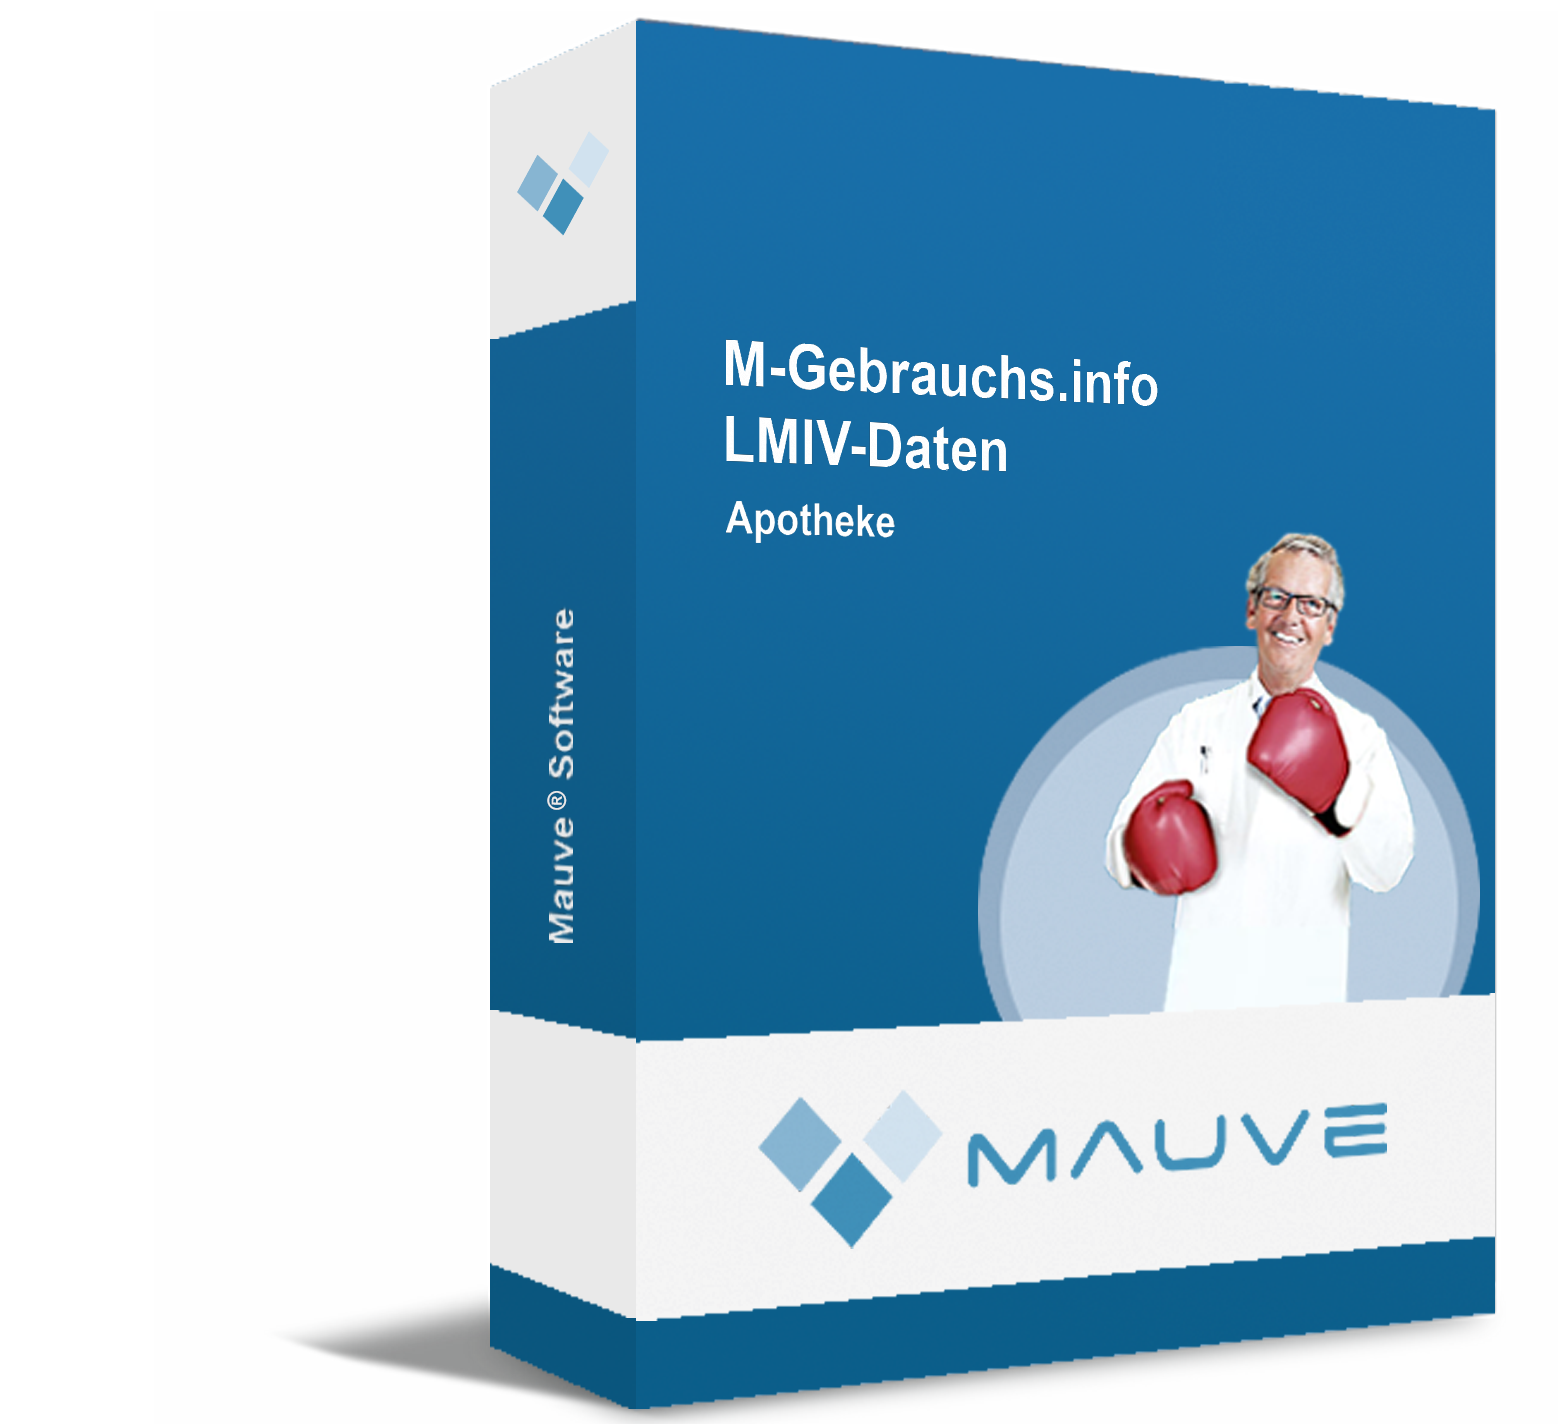 M-Gebrauchs.info LMIV-Daten